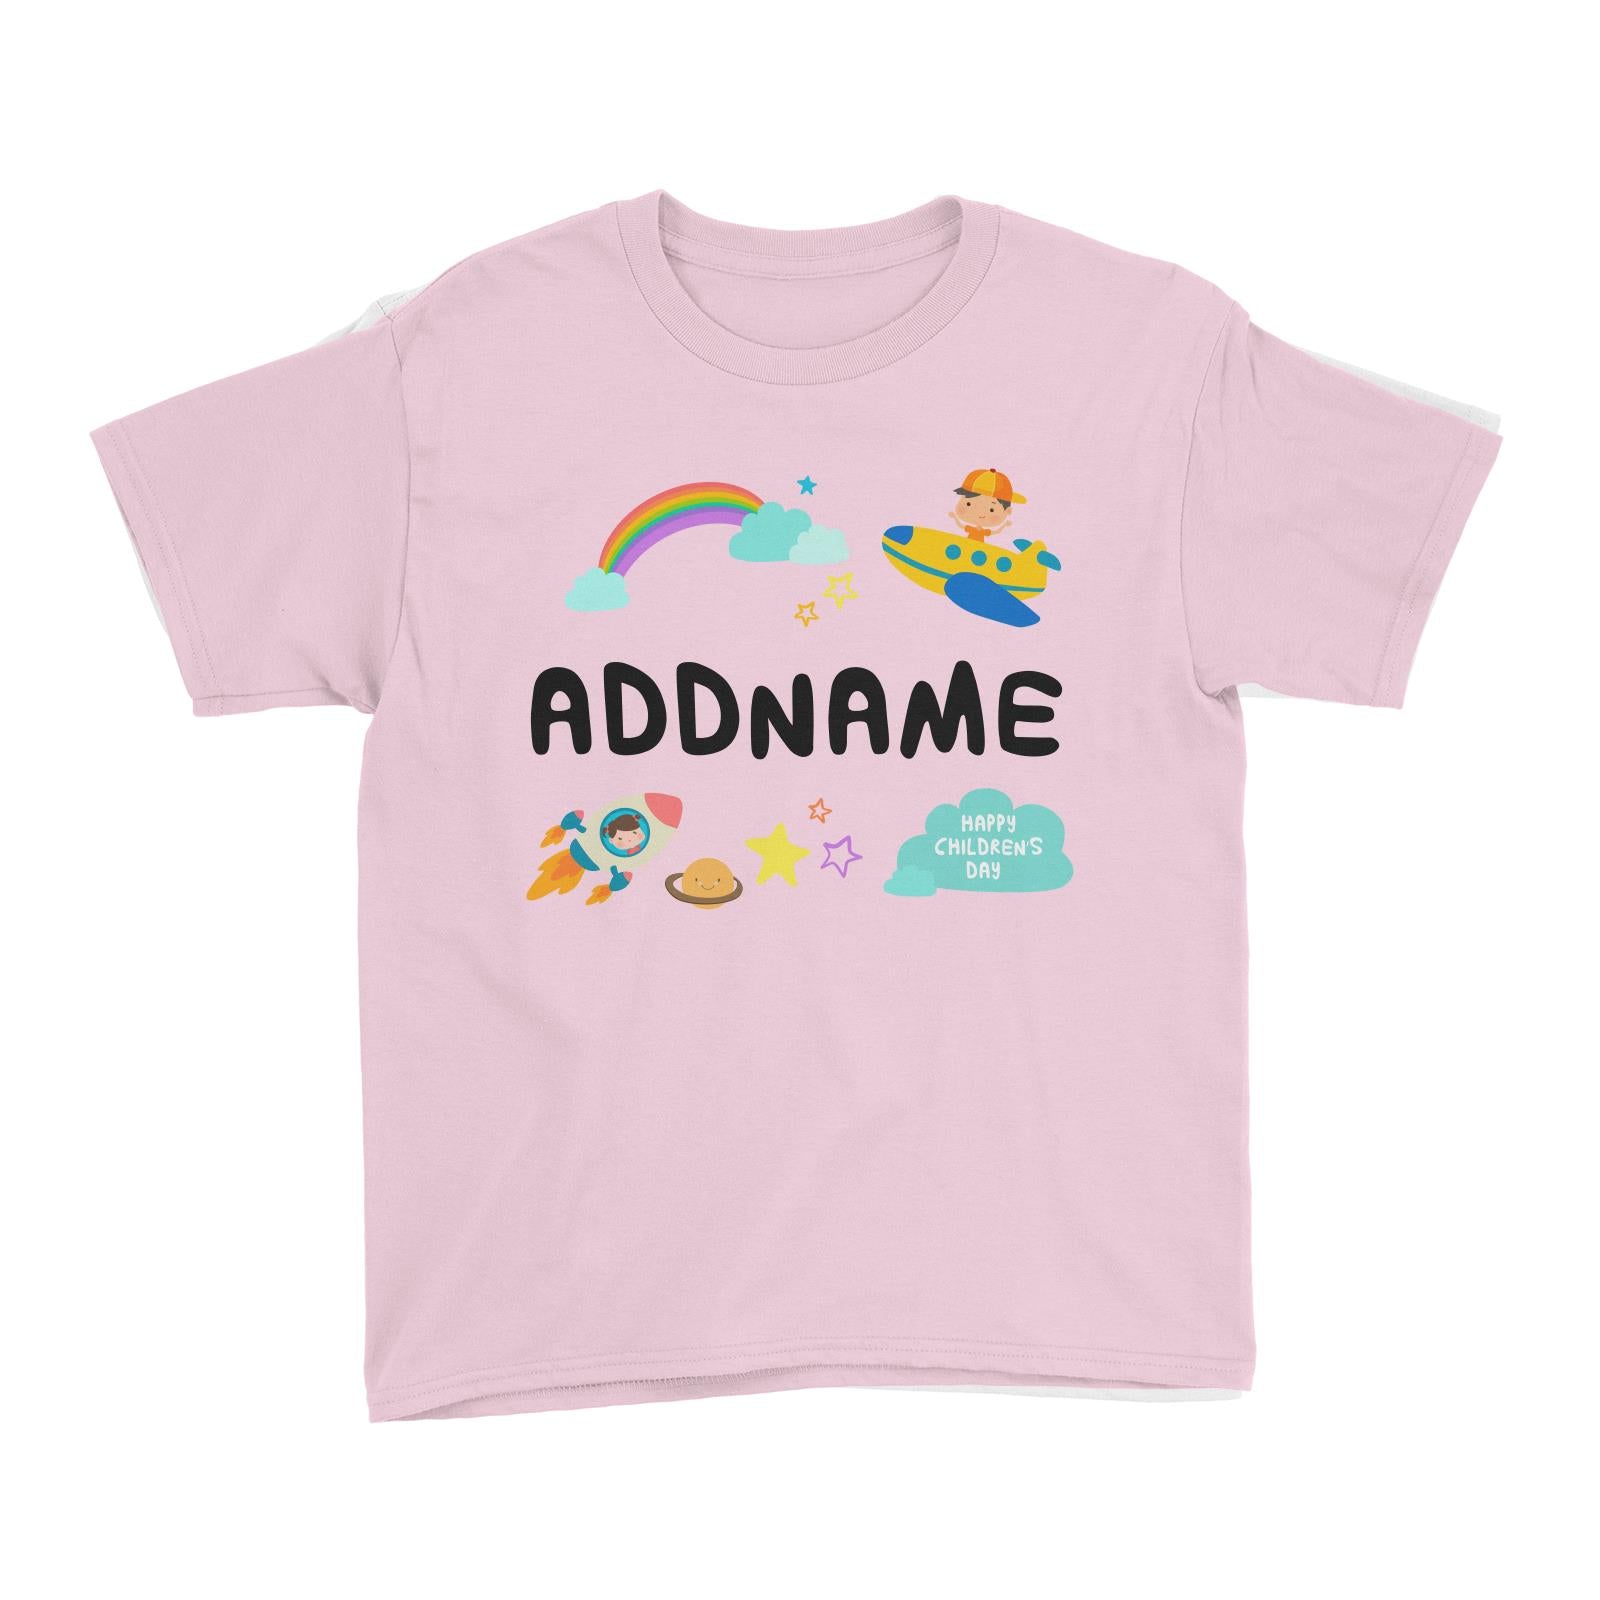 Children's Day Gift Series Adventure Boy Space Rainbow Addname Kid's T-Shirt